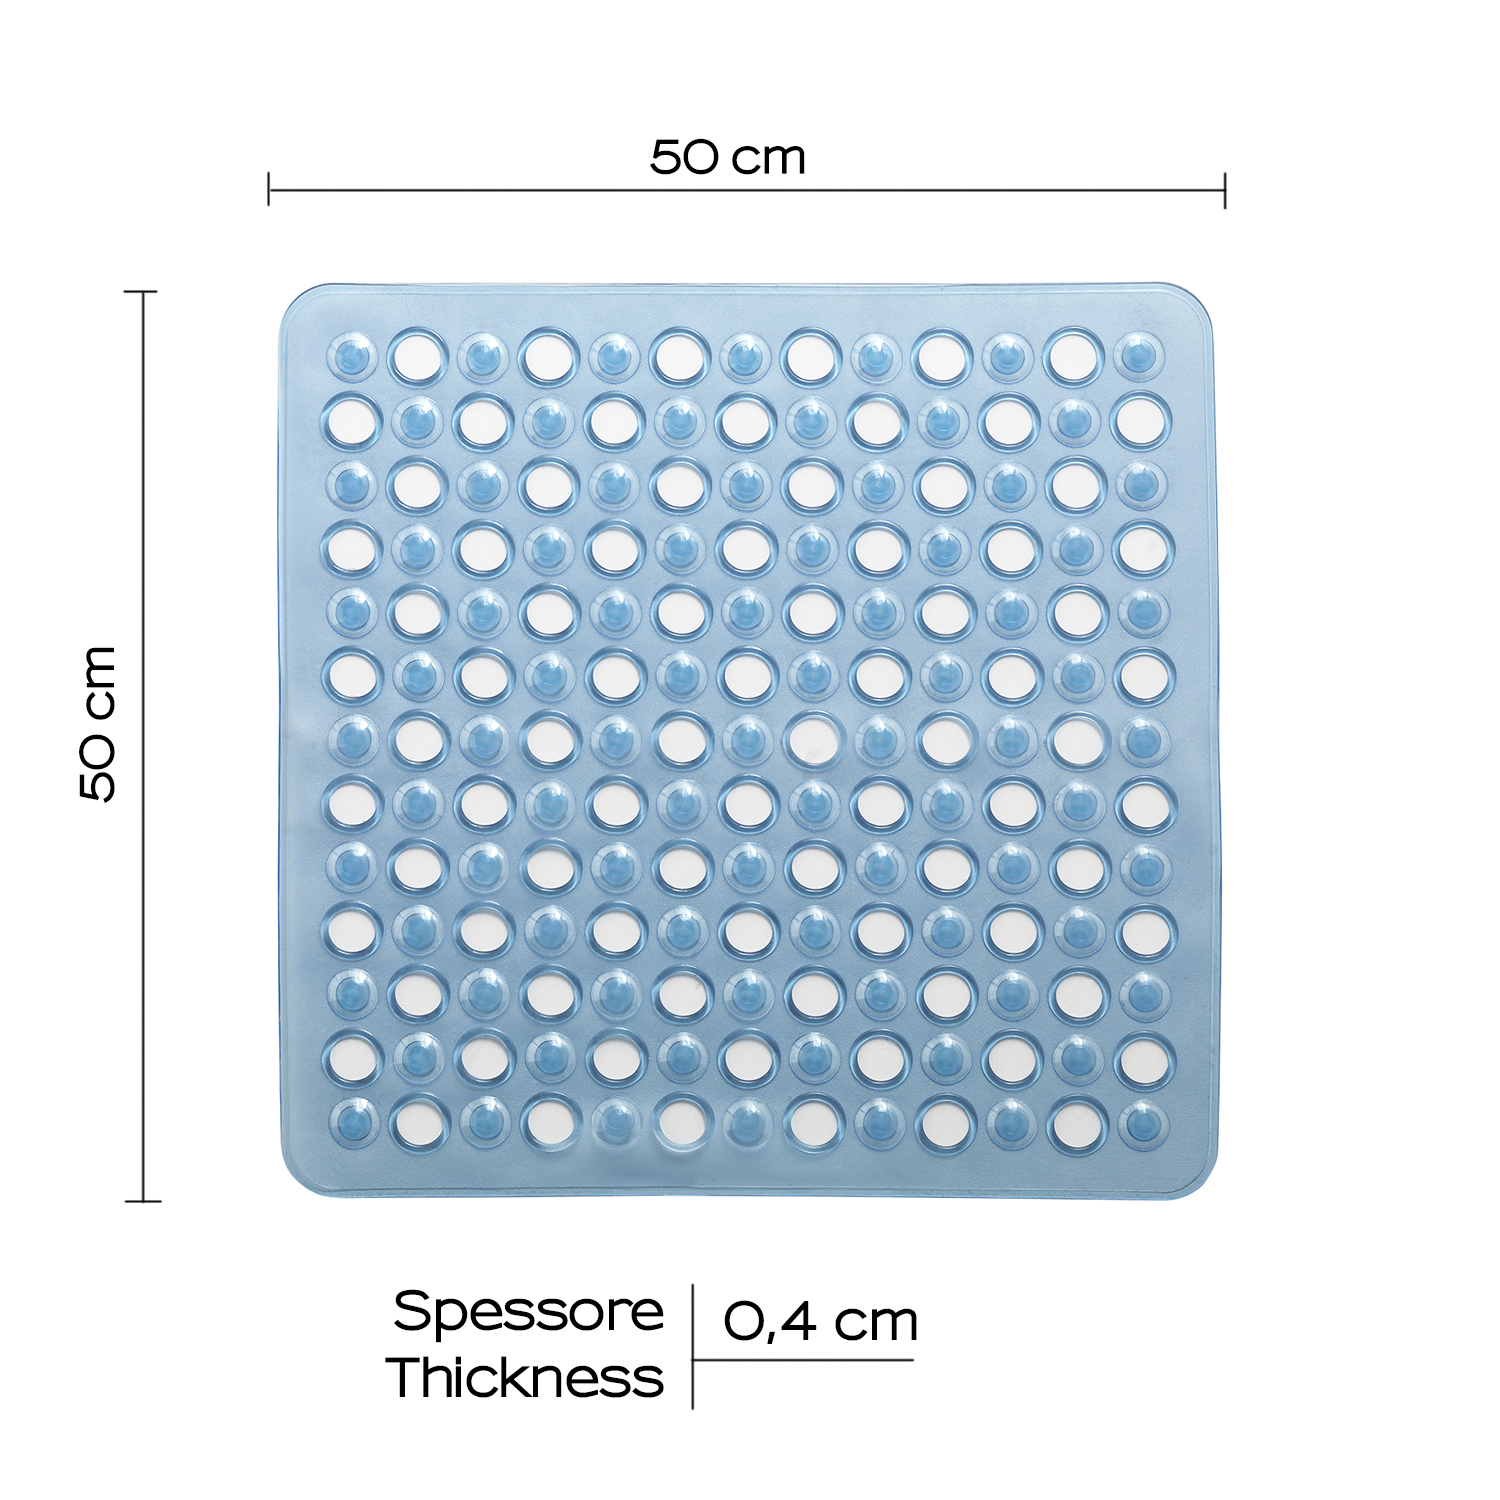 Maim alfombra antideslizante para bañera 60×38 cm transparente azul – Gedy